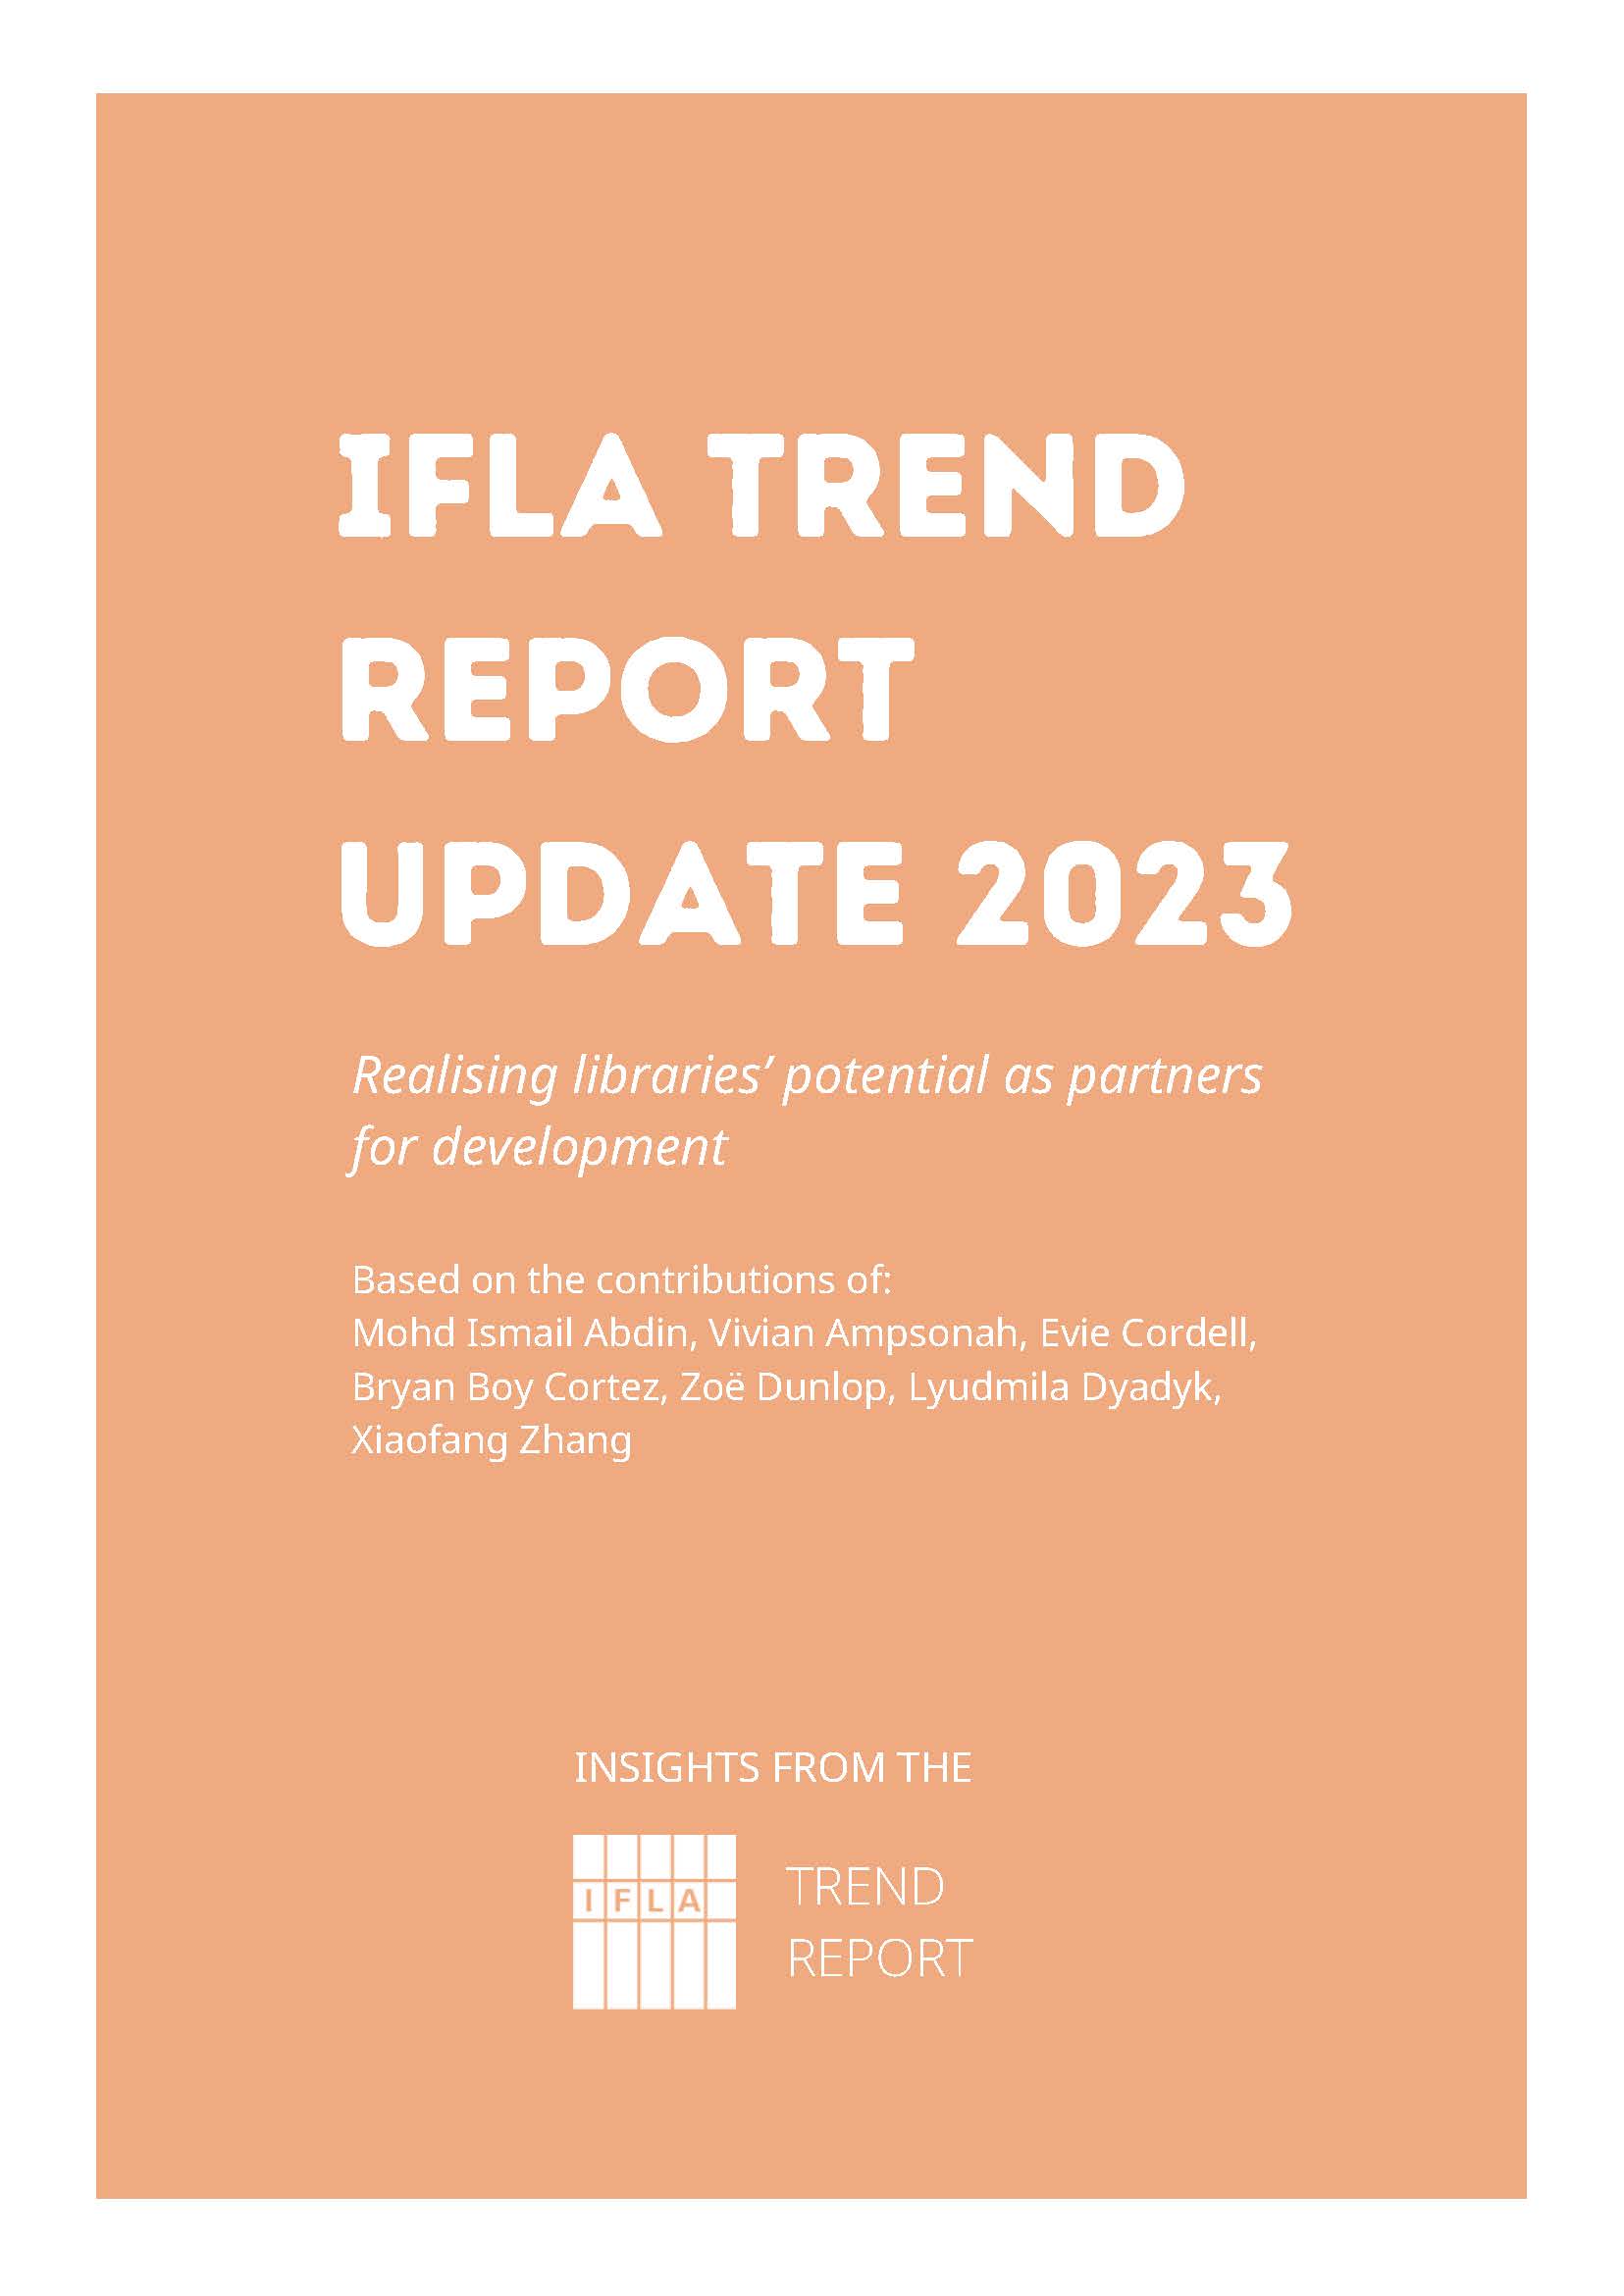 IFLA Trend Report 2022 Update